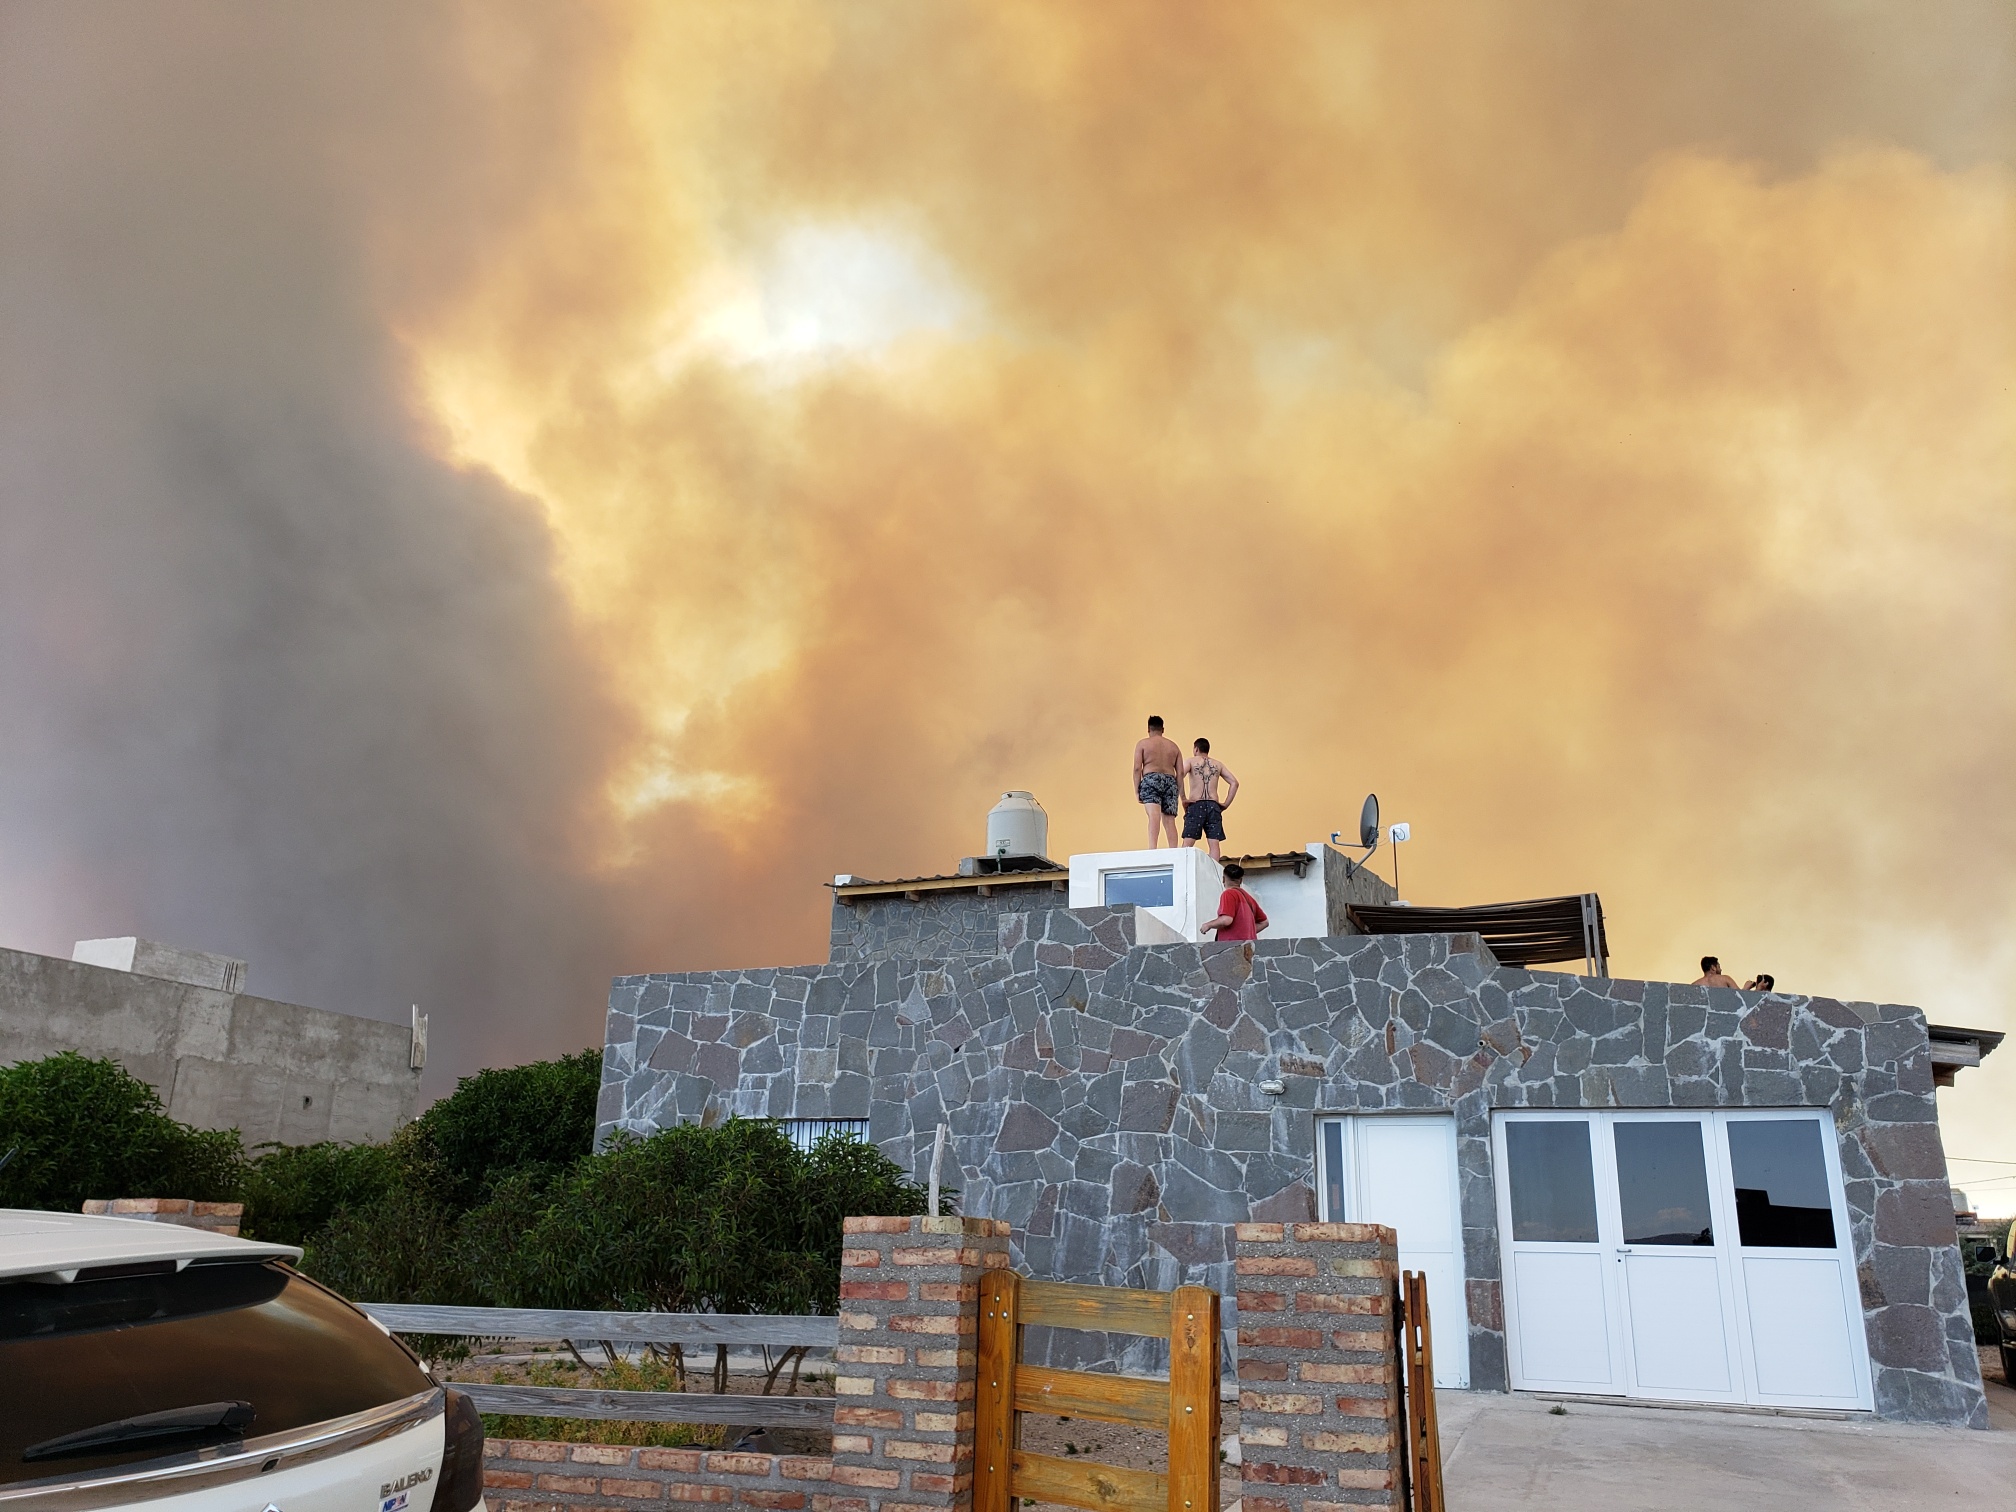 El humo rodea parte del balneario, y comenzó la evacuación en algunos barrios. (Foto: Martín Brunella)